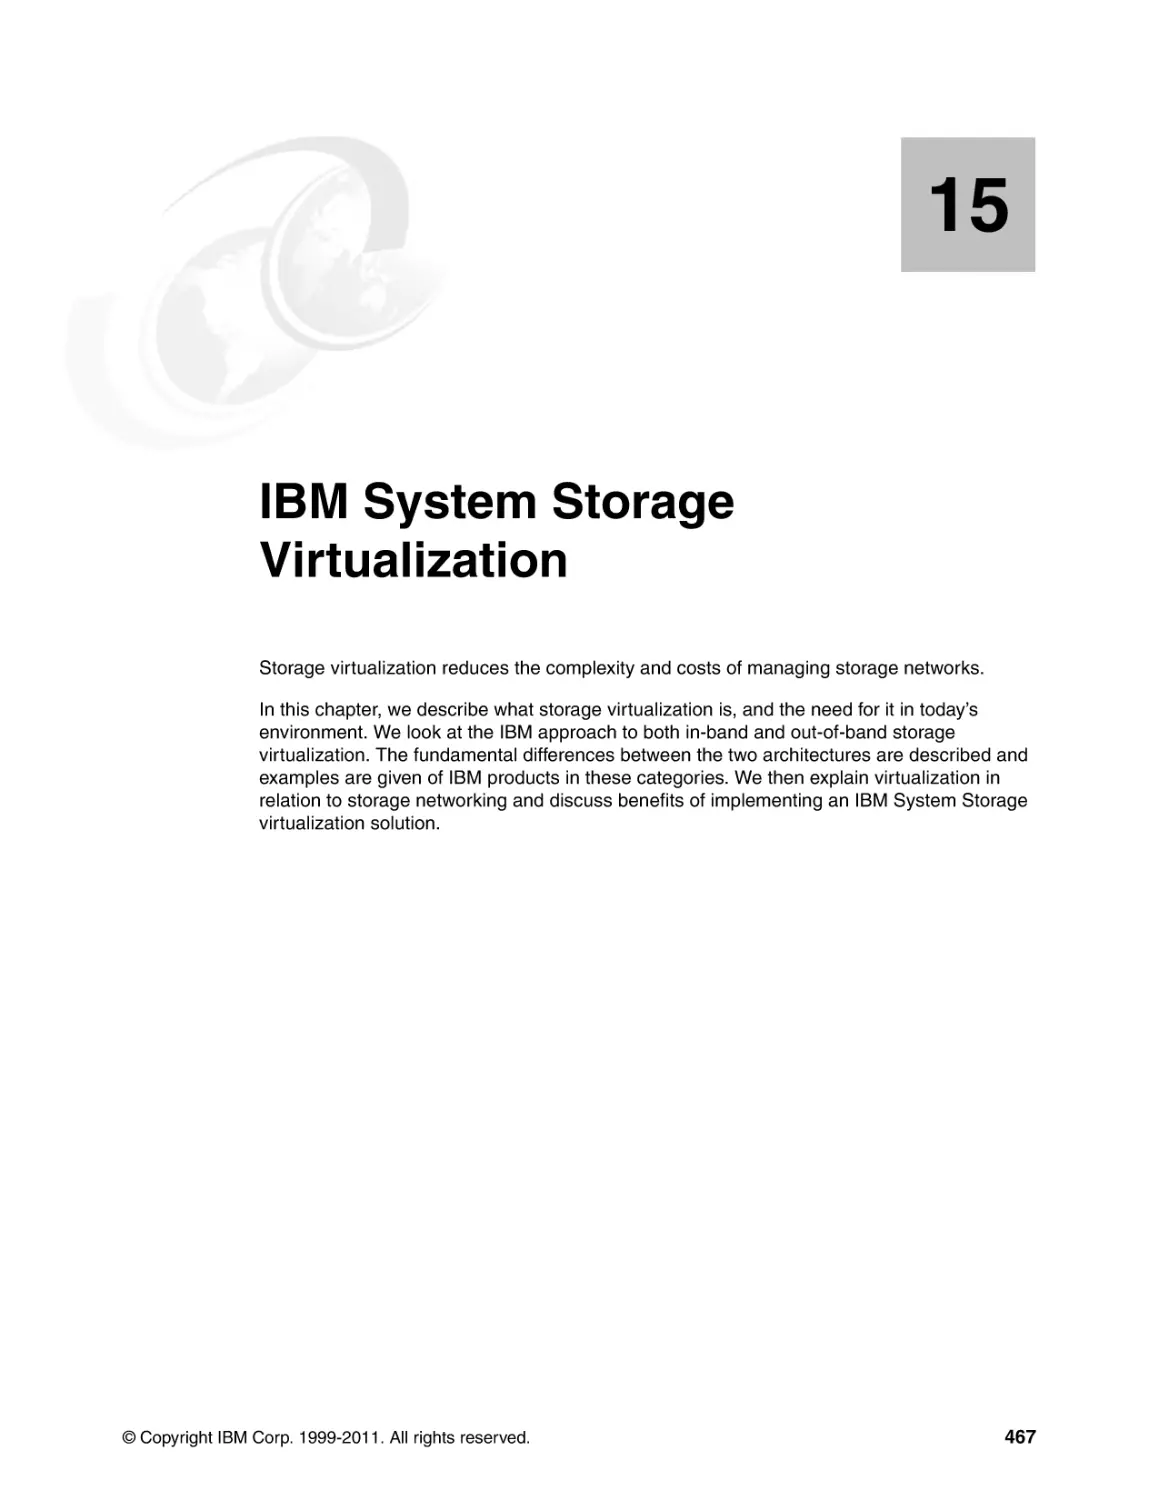 Chapter 15. IBM System Storage Virtualization